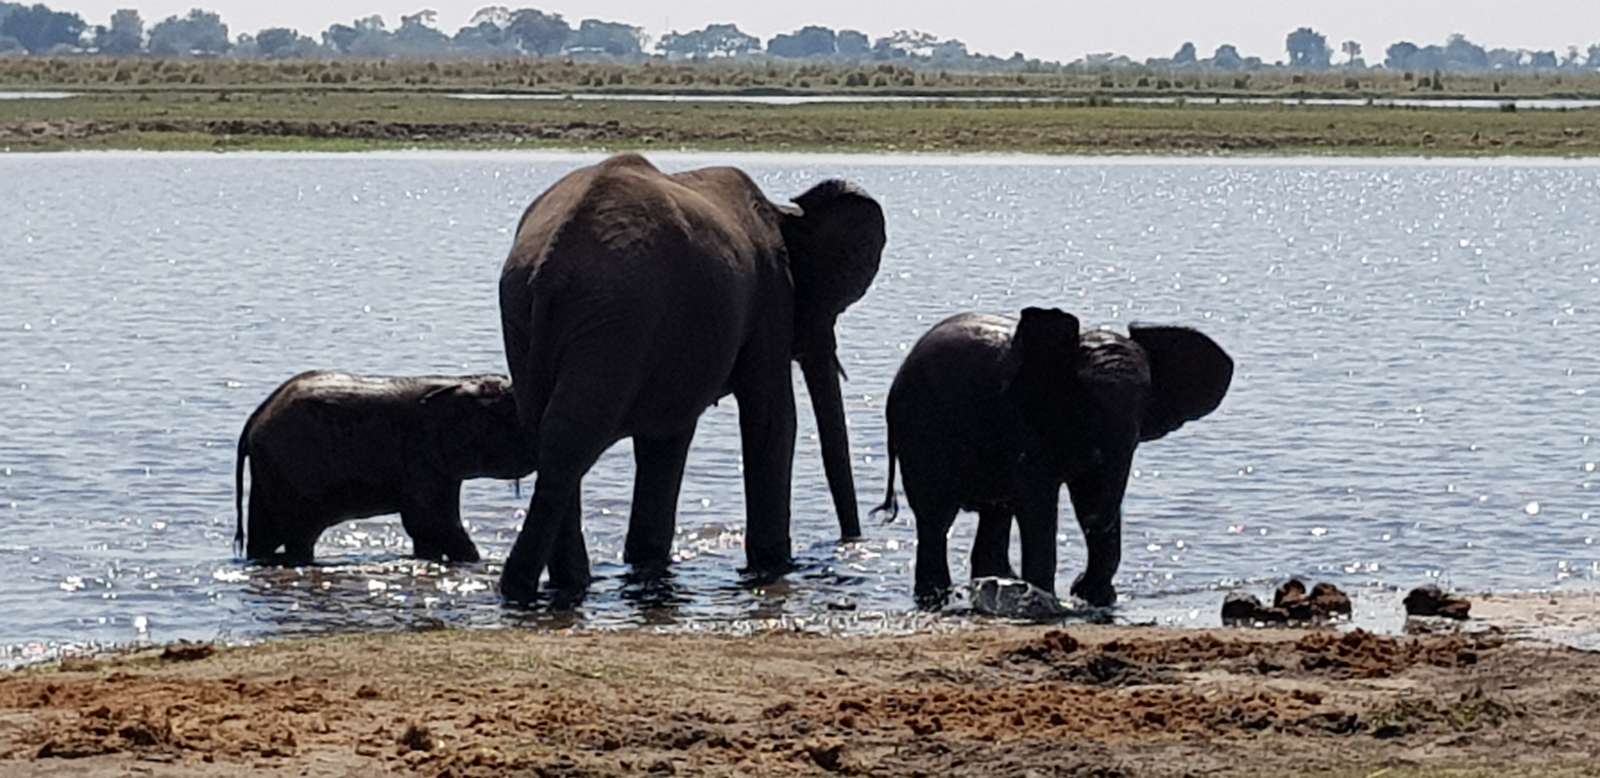 Elephants Botswana puzzle online from photo